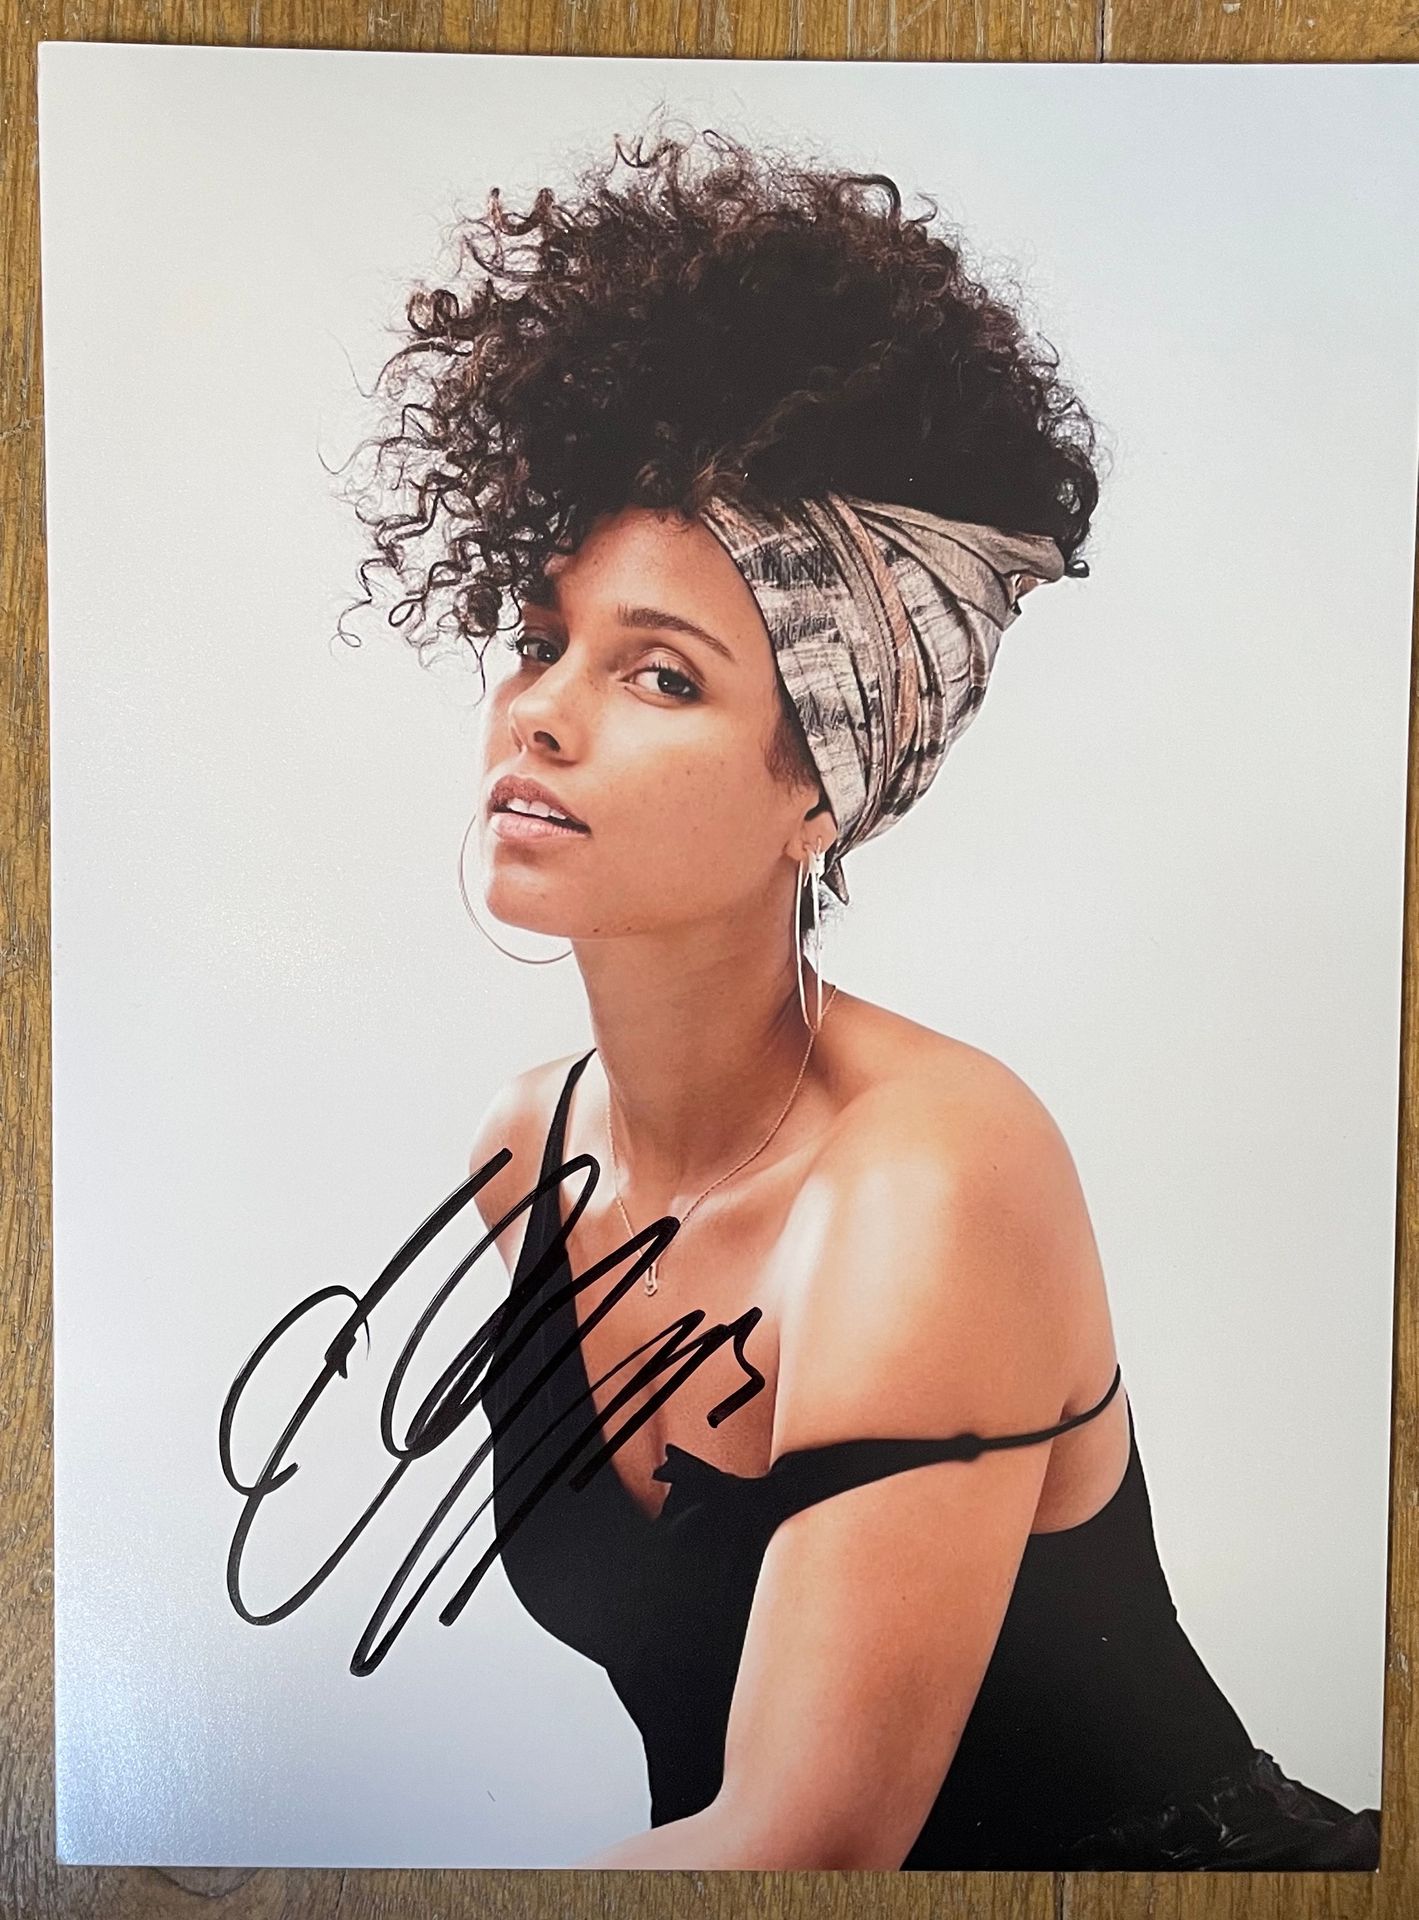 R&B/Funk… Ein Foto - Alicia Keys
Von der Künstlerin signiert
EX